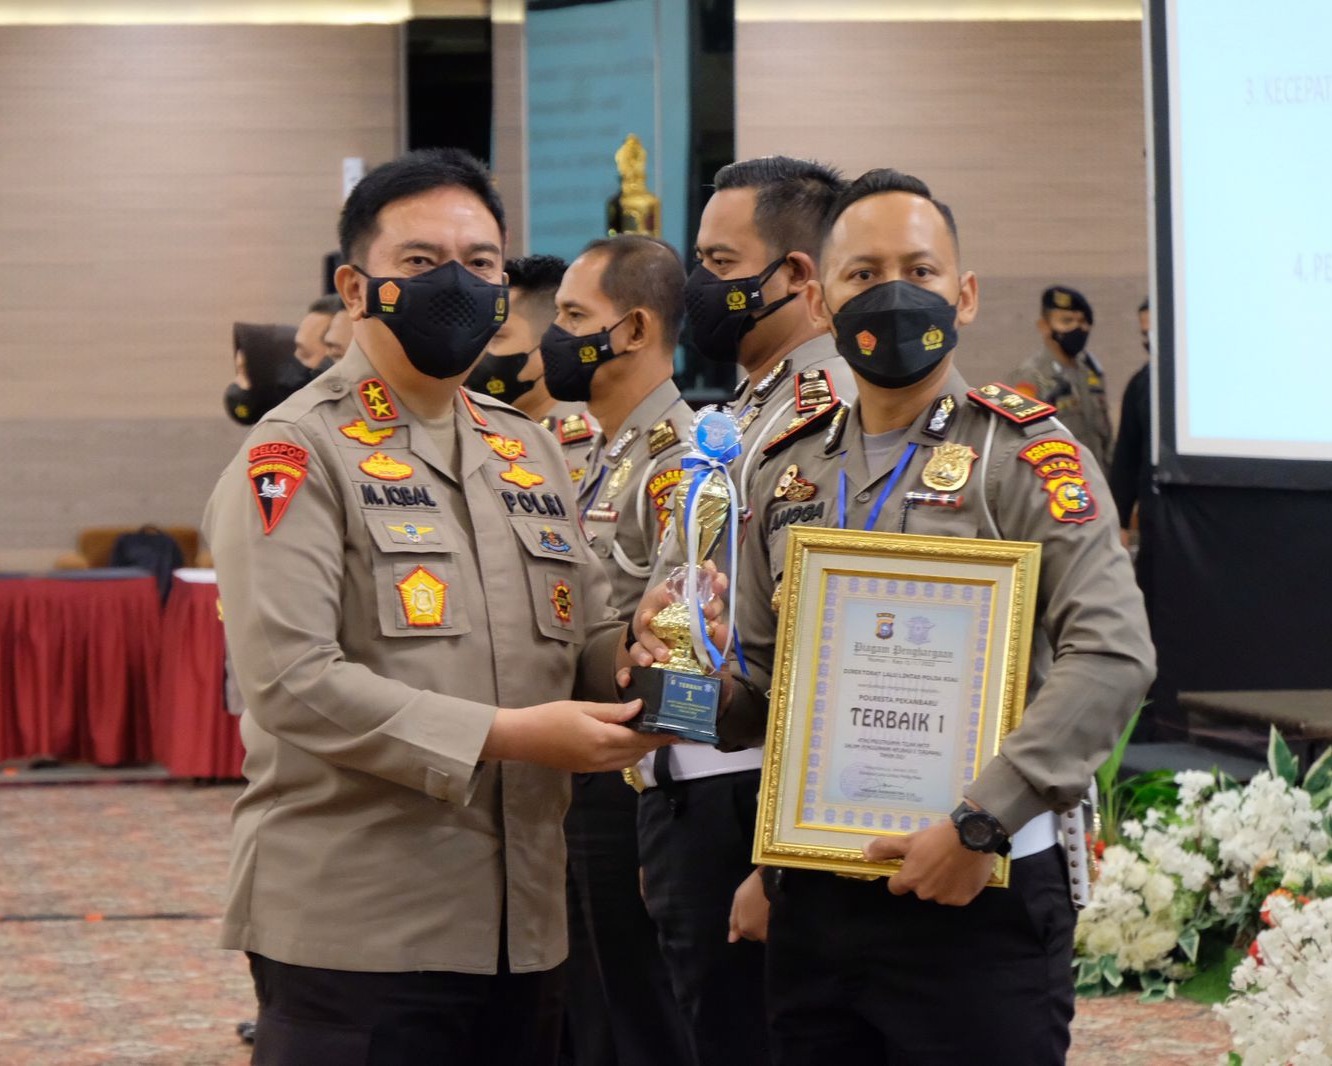 Evaluasi Kinerja Serta Anev Operasi Lilin Lancang Kuning 2021 Ditlantas Polda Riau, Kapolda Berikan Reward Kepada Satlantas Berprestasi